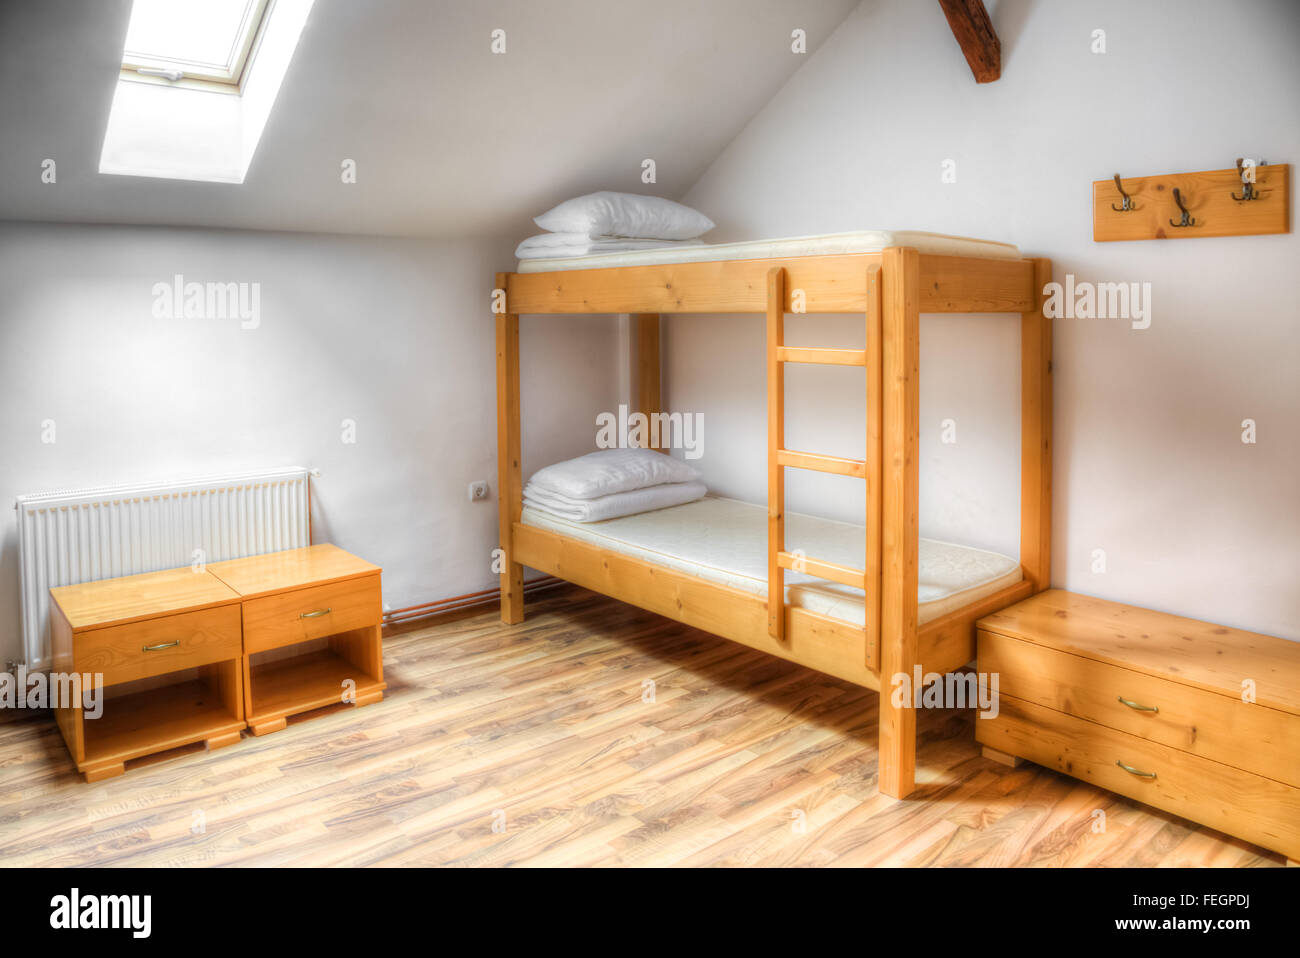 Auberge propre chambre avec lits superposés en bois. Banque D'Images